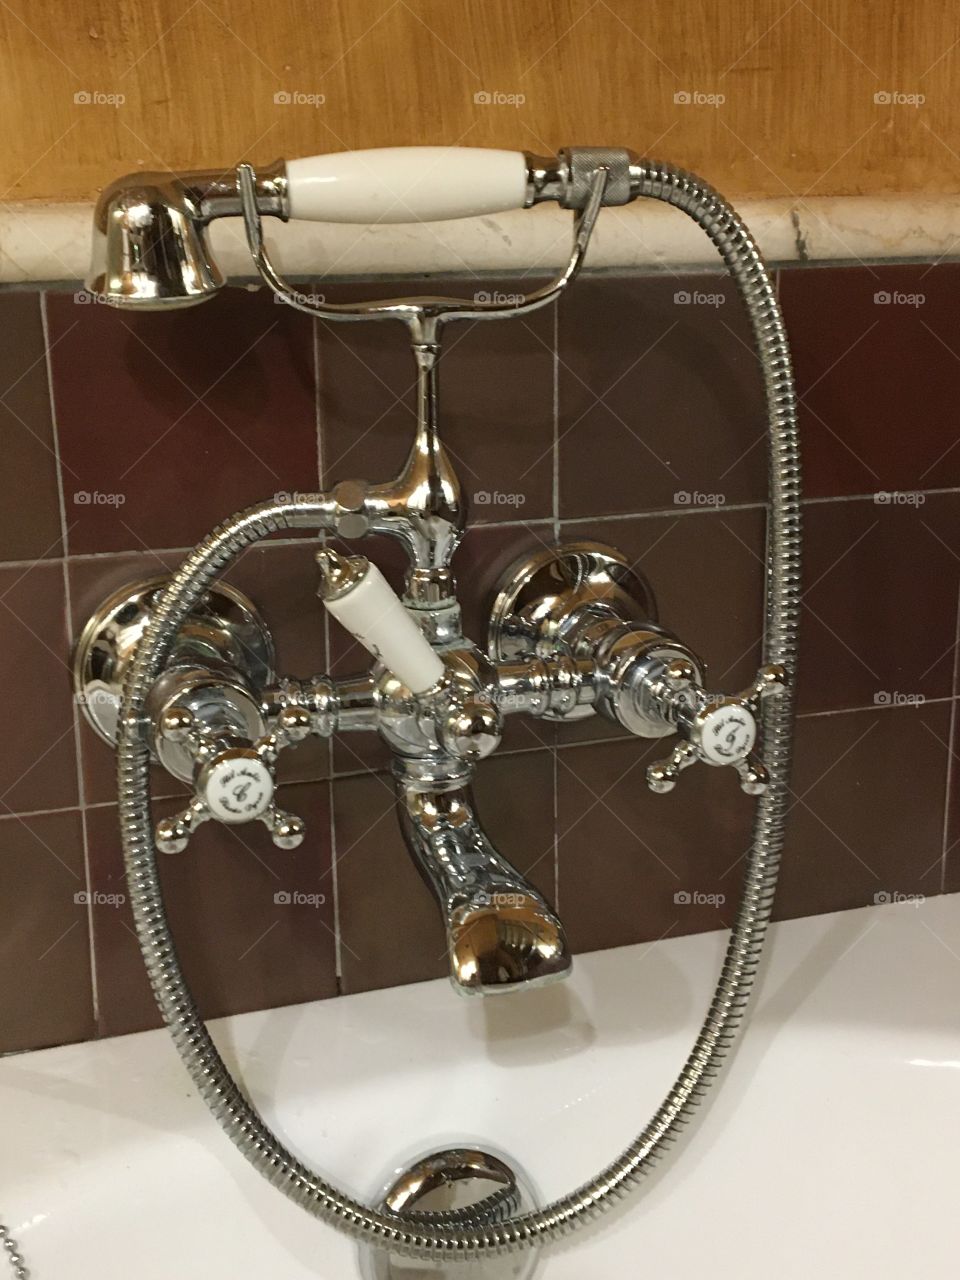 Elegant bathroom faucets